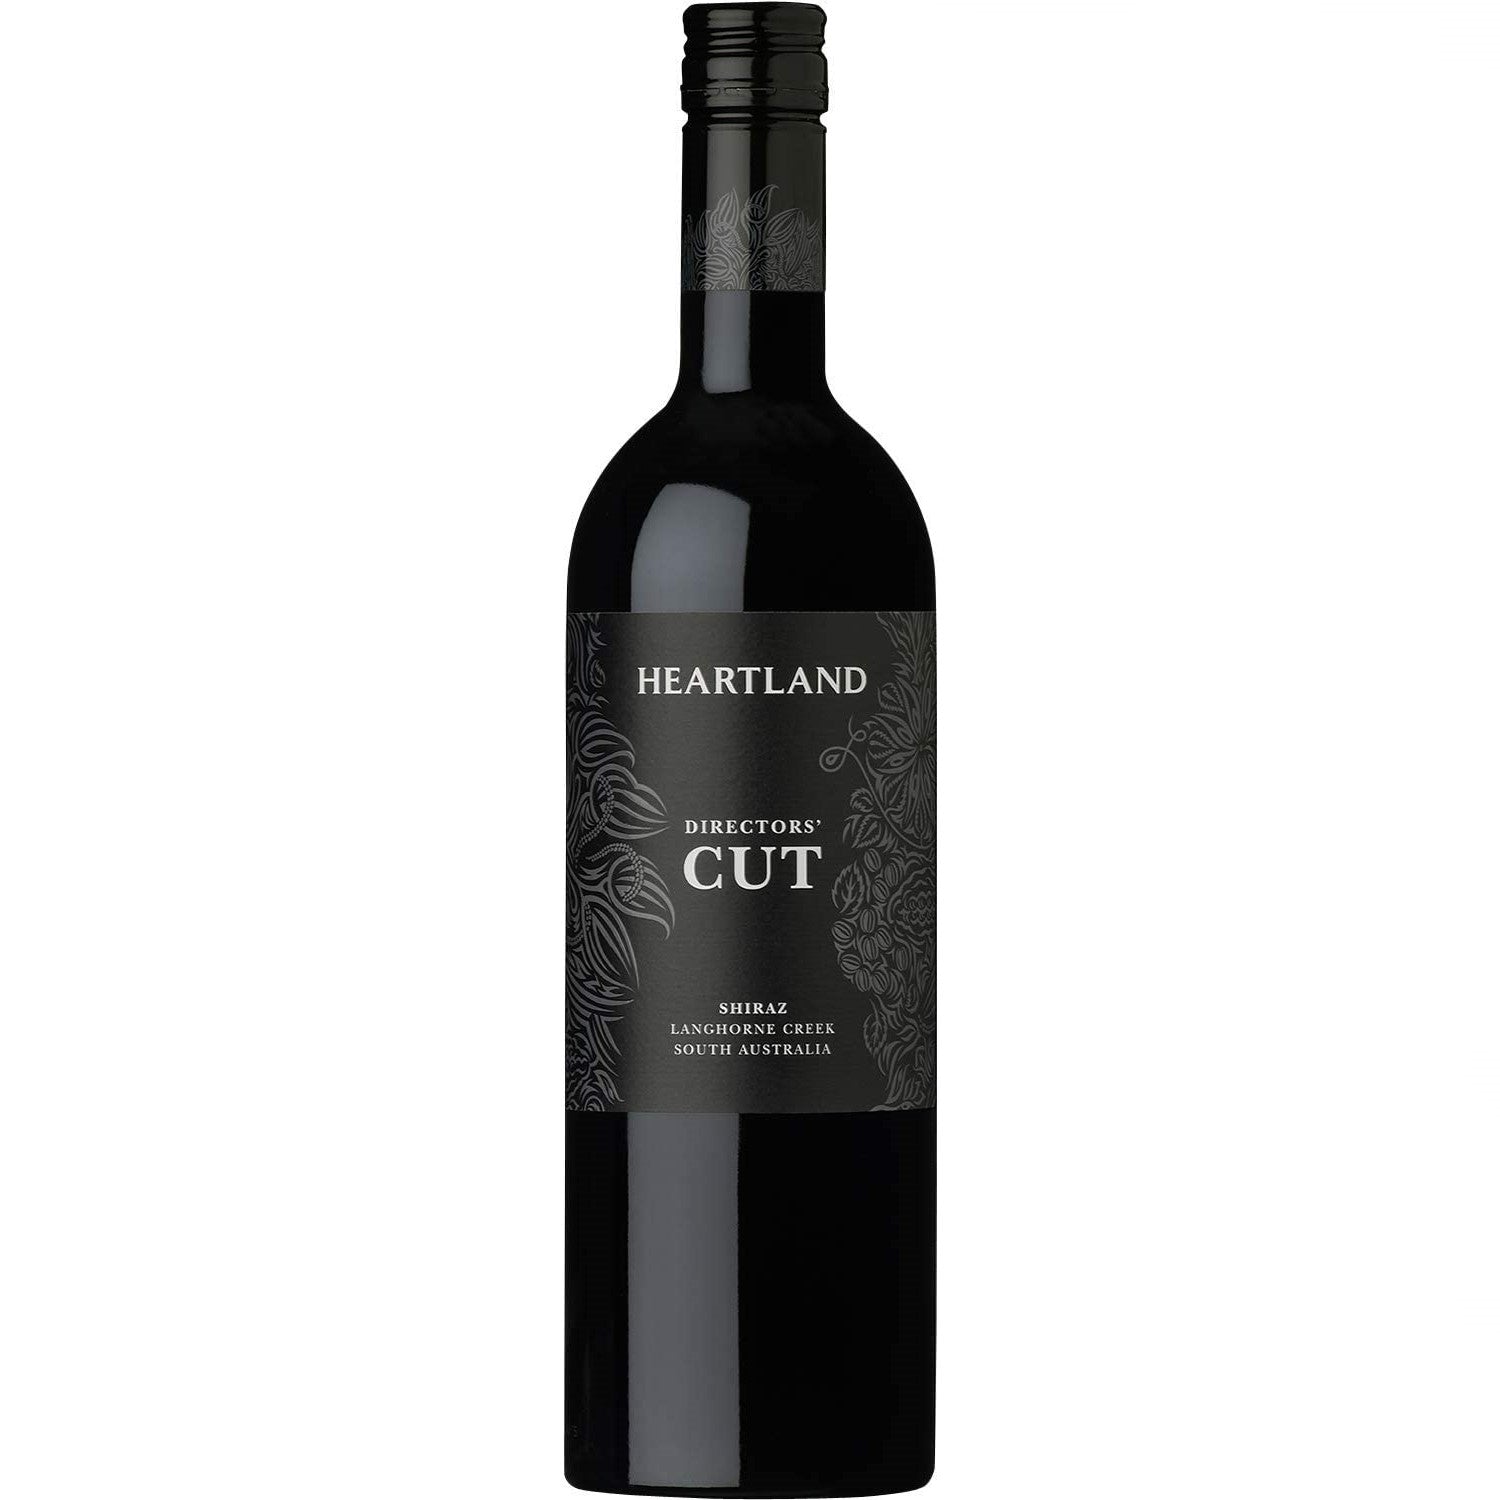 Heartland Directors' Cut Shiraz Langhorne Creek Rotwein Wein trocken Australien (3 x 0.75l) - Versanel -